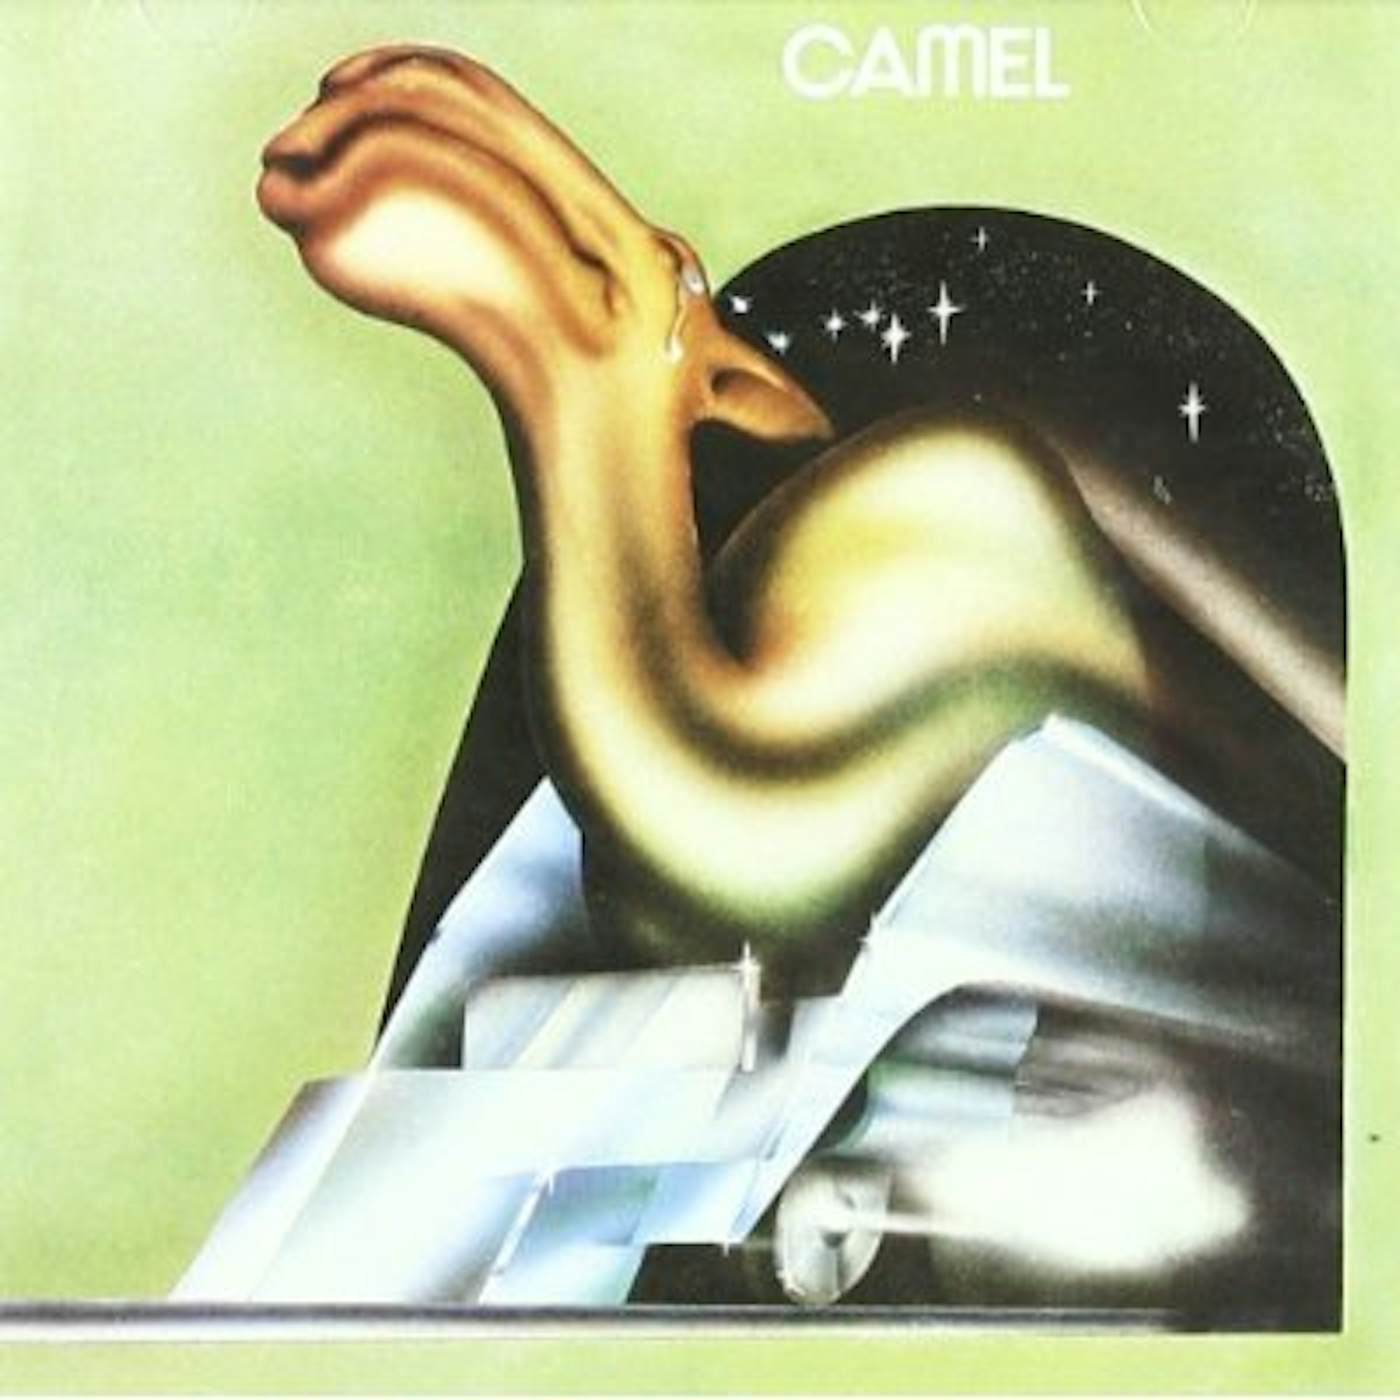 CAMEL CD